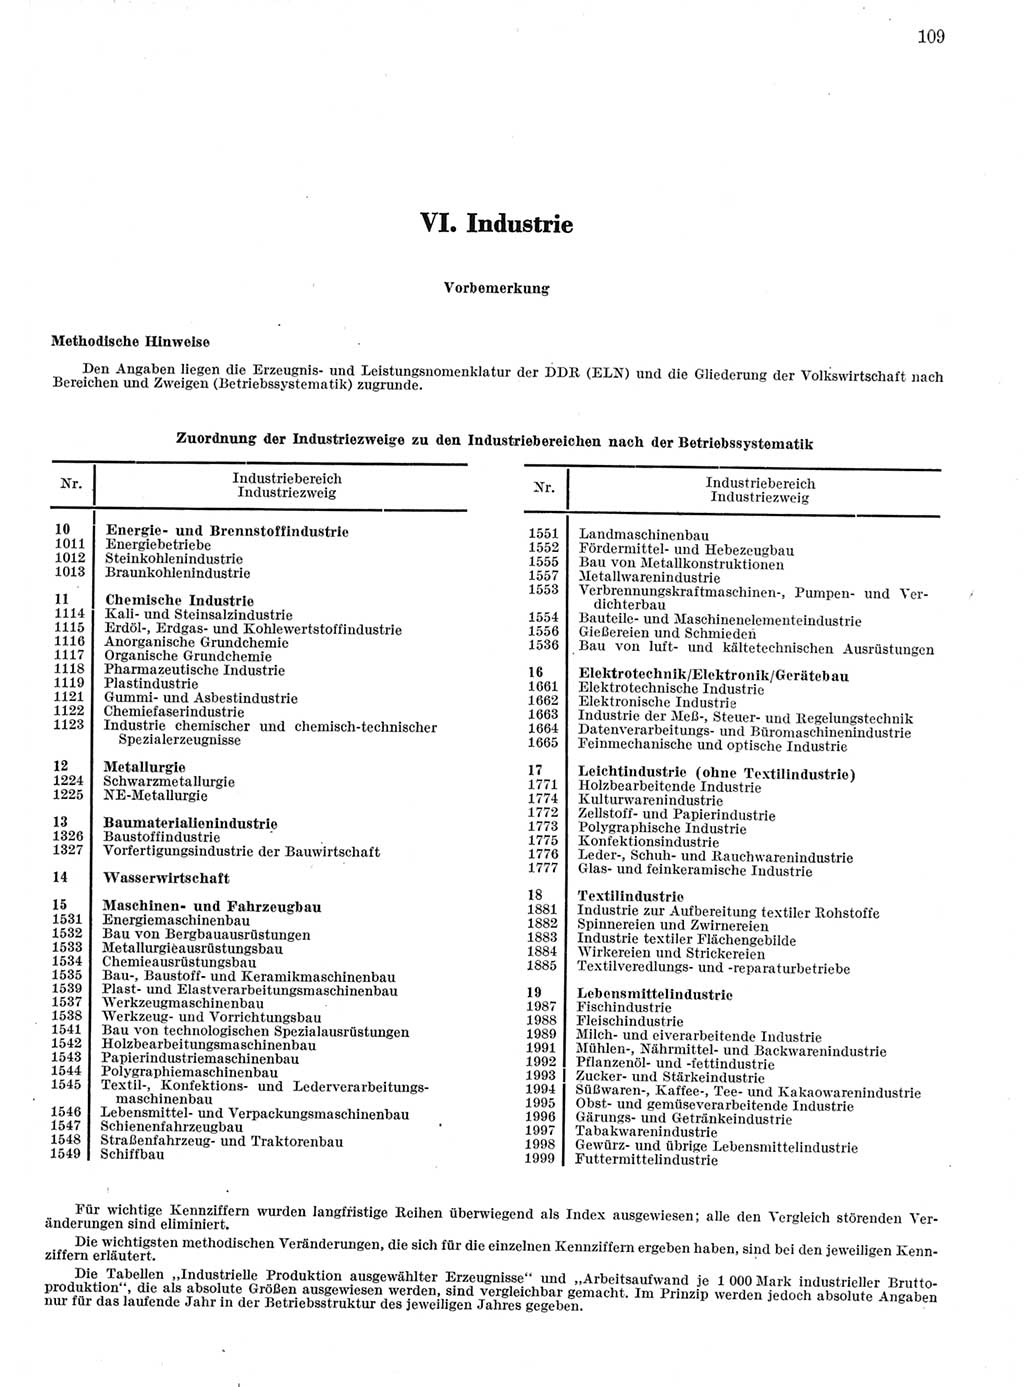 Statistisches Jahrbuch der Deutschen Demokratischen Republik (DDR) 1972, Seite 109 (Stat. Jb. DDR 1972, S. 109)